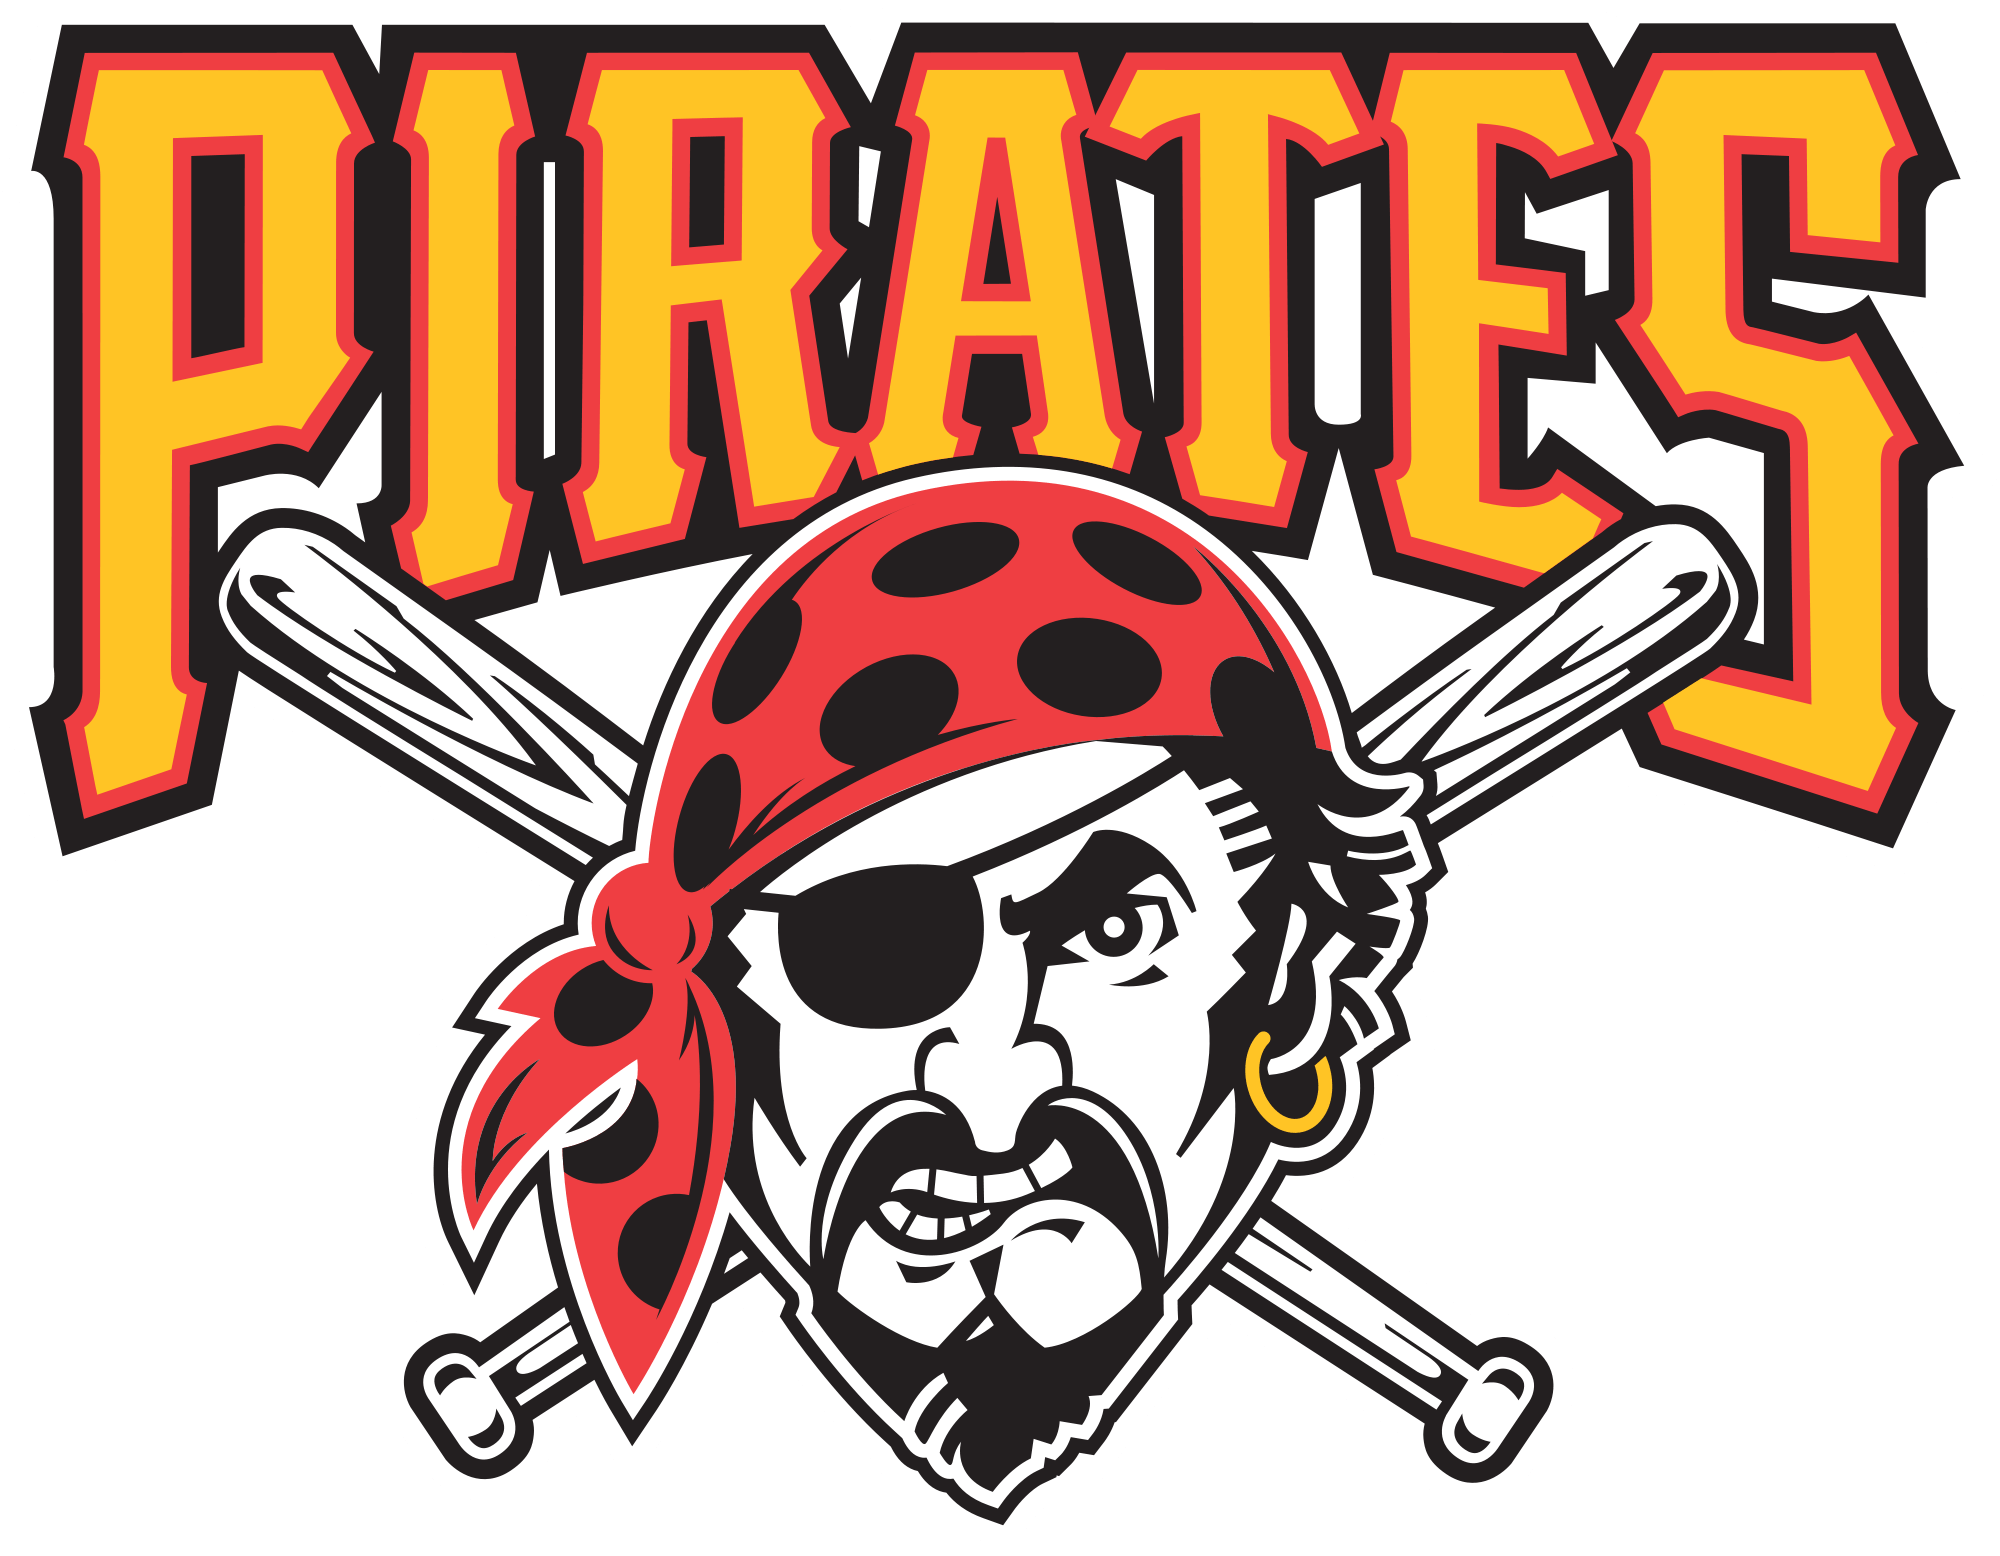 Pittsburgh Pirates MLB logo, logotype